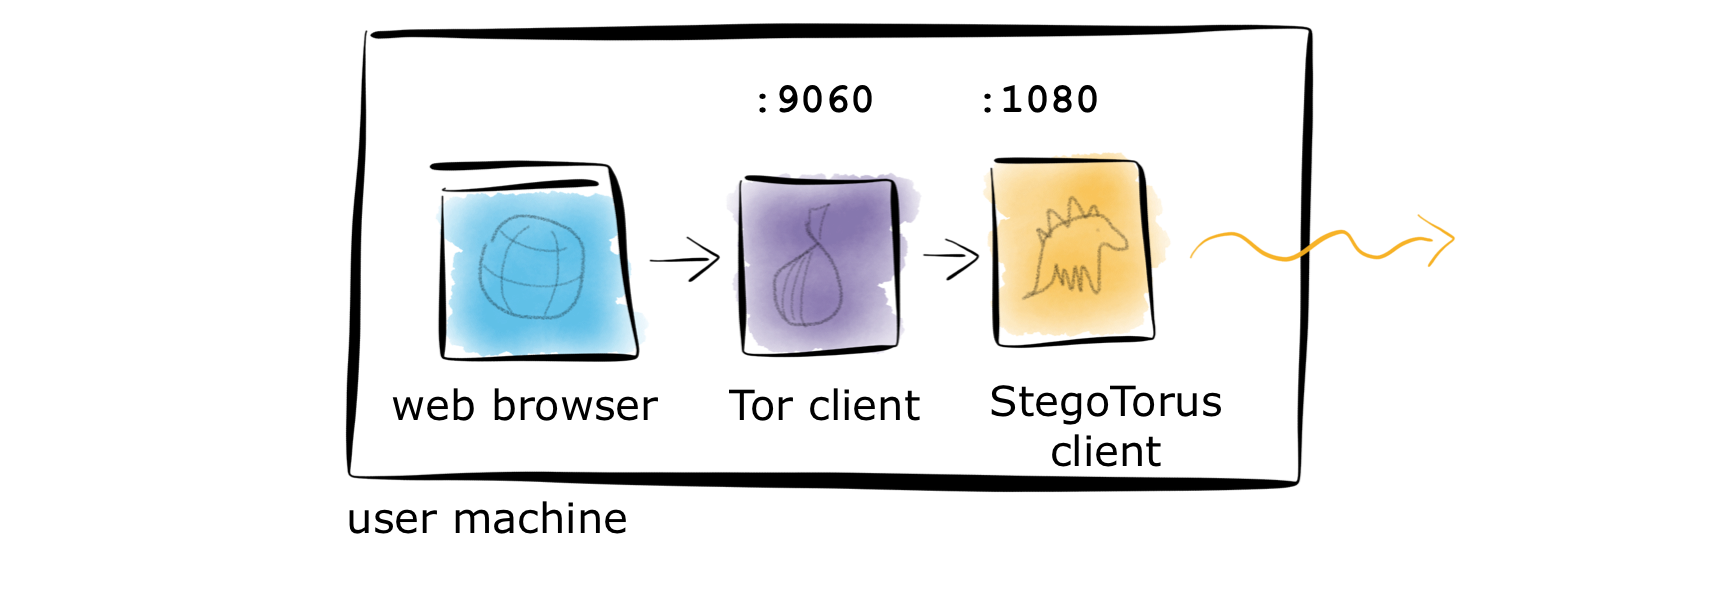 diagram to show StegoTorus client elements